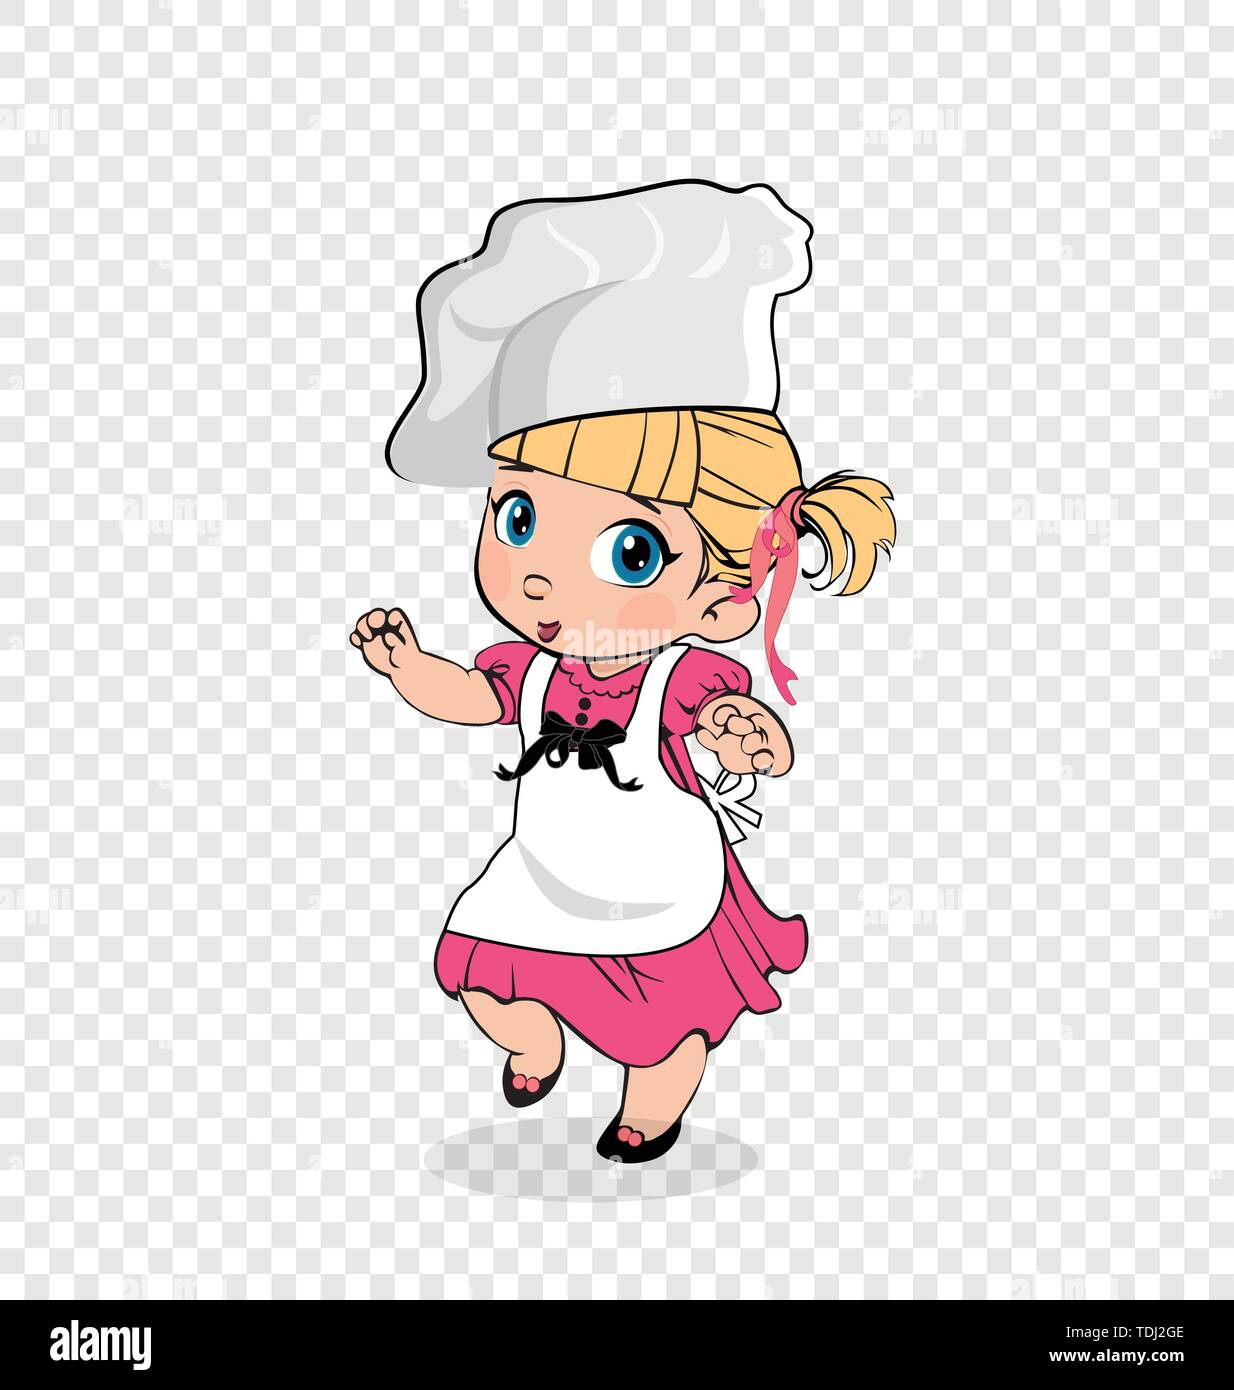 Kleines Mädchen Koch in weißen Schürze und Mütze, Kindermenü Charakter, Adorable Kocher Baby, Kochen blonde Kind in rosa Kleid isoliert auf transparente Backgro Stock Vektor